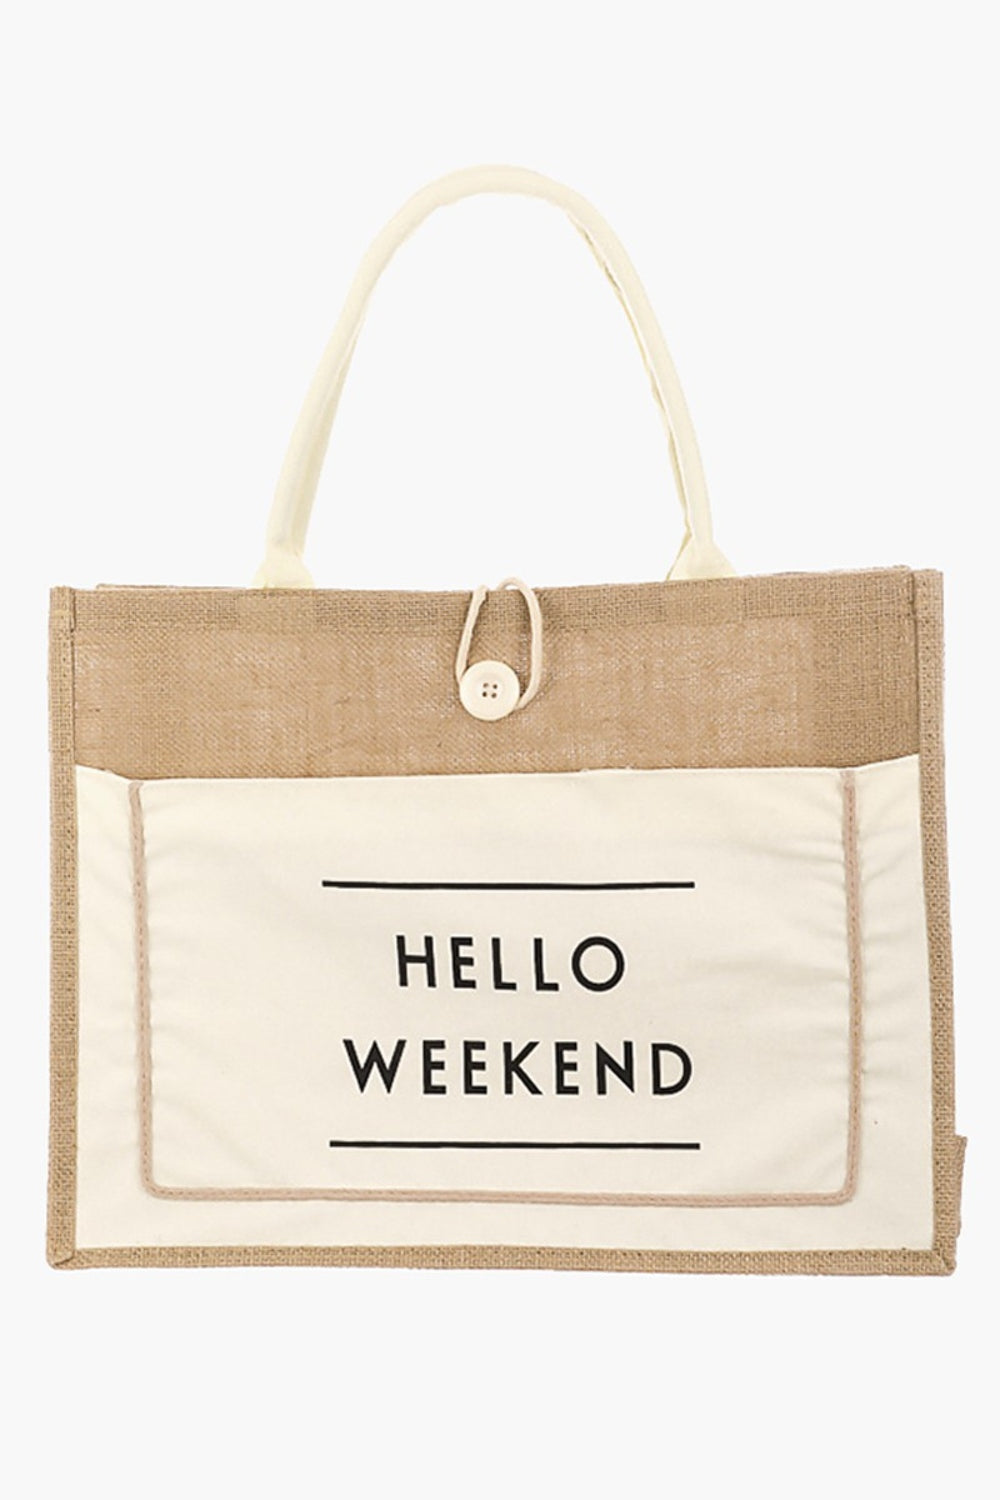 Fame Hello Weekend Burlap Tote Bag - Fashion BTQ -  - Fashion BTQ